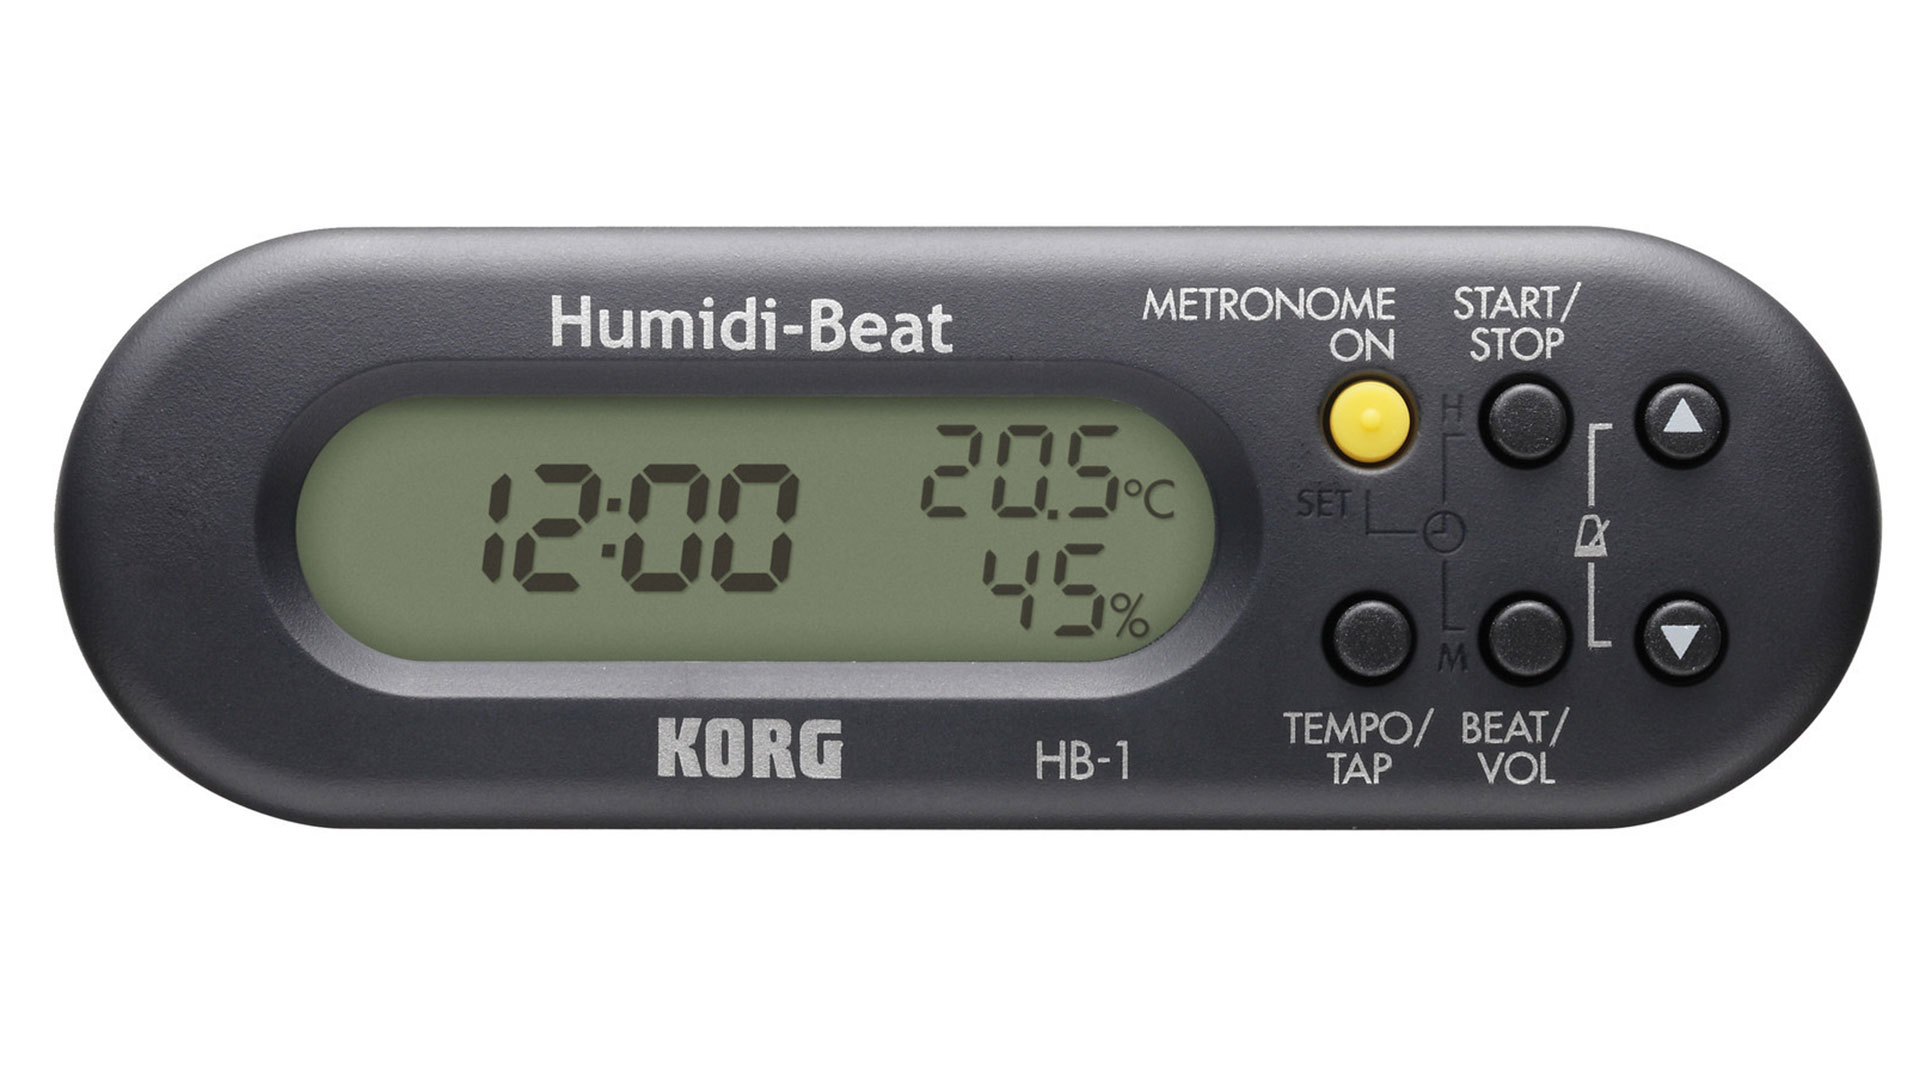 Korg HB-1 BK metronome, hygrometer, thermometer, black